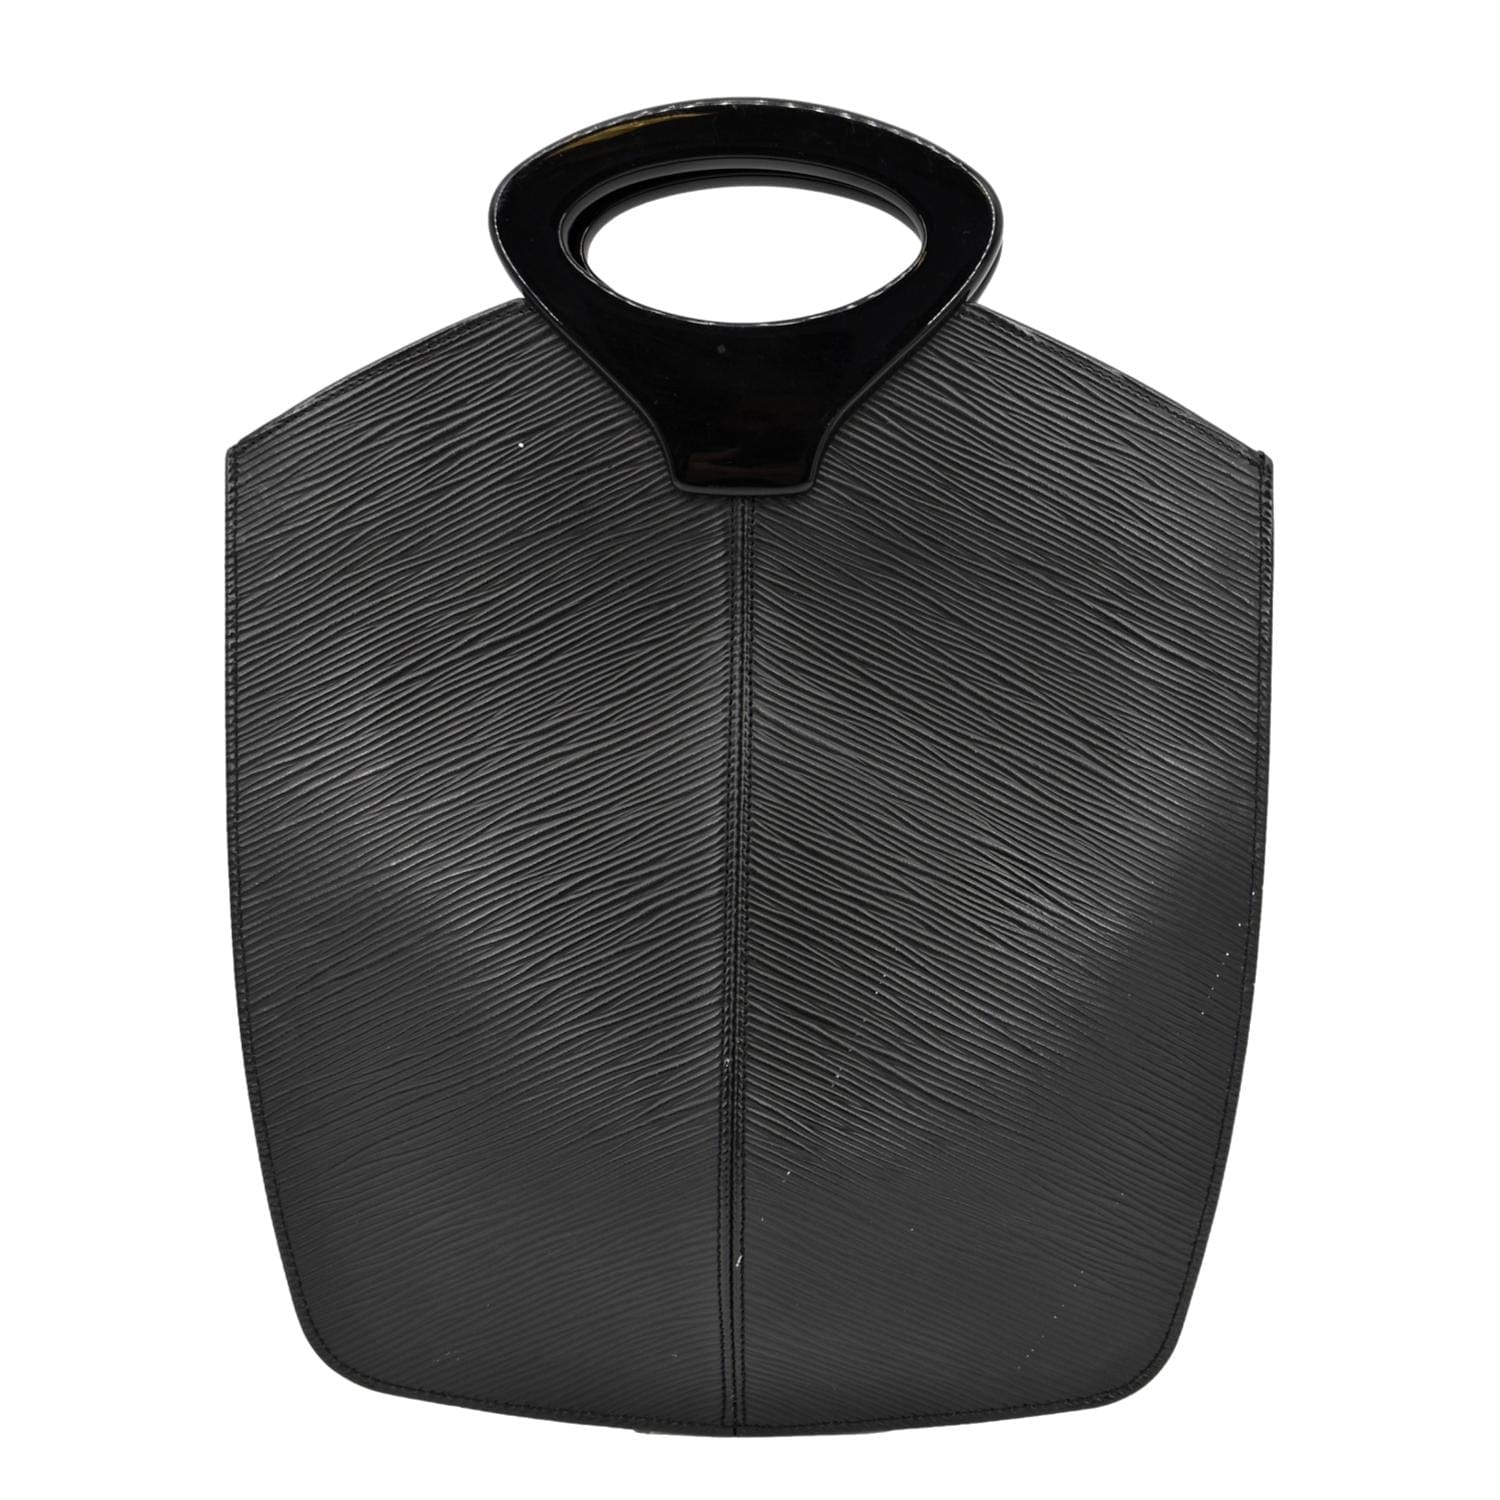 Louis Vuitton Noctambule EPI Leather Tote Bag